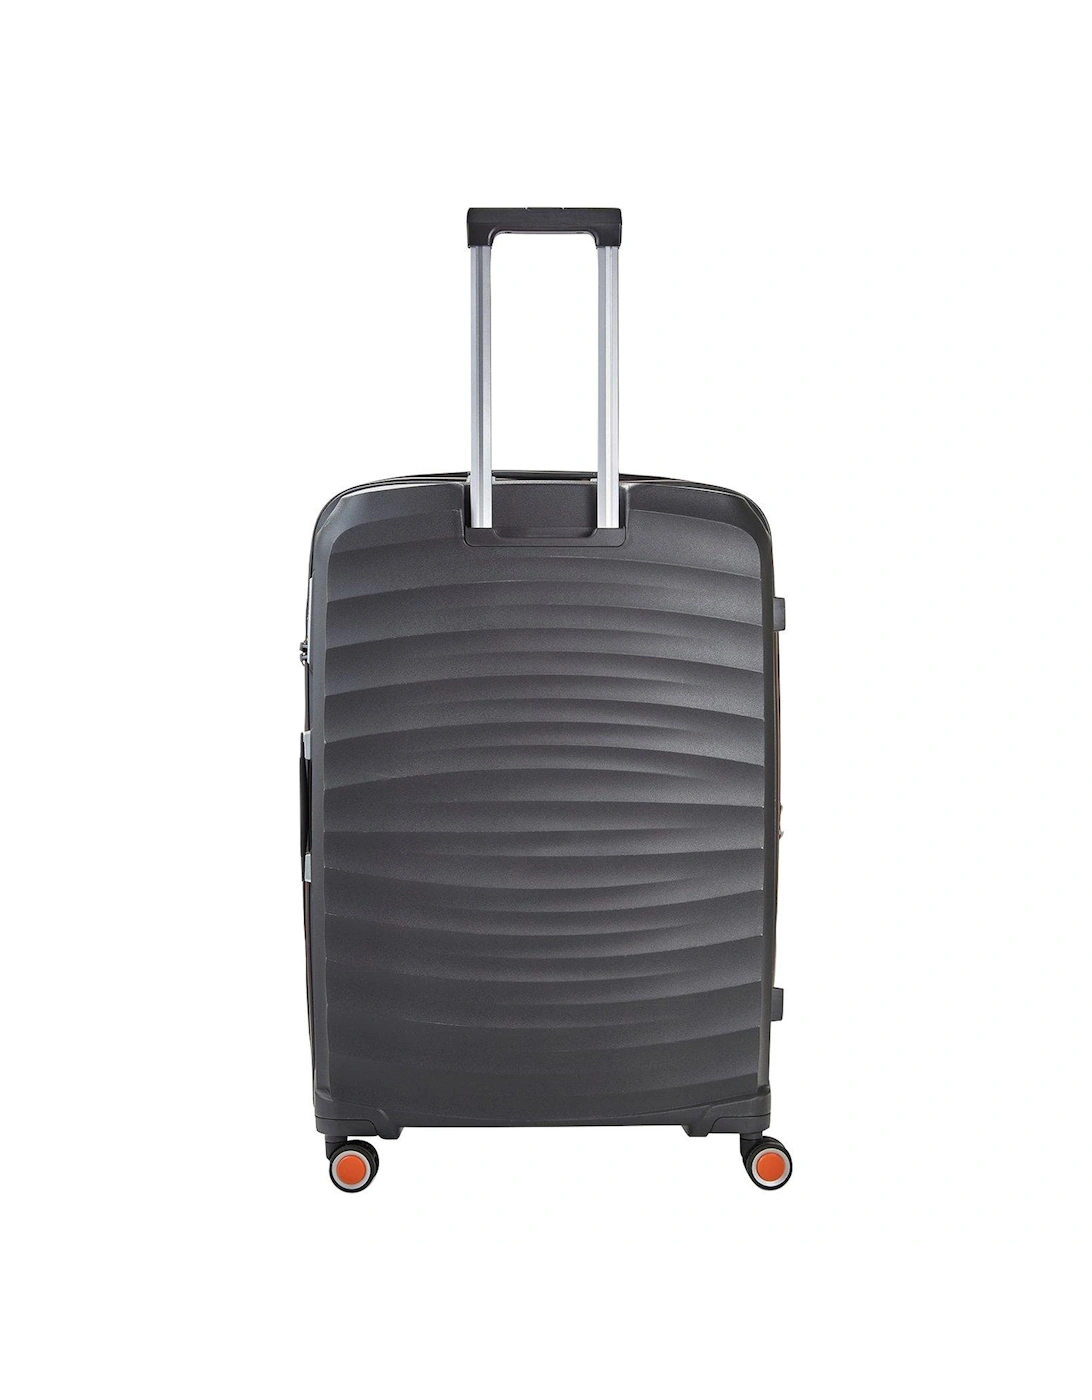 Sunwave Large 8-Wheel Suitcase - Charcoal